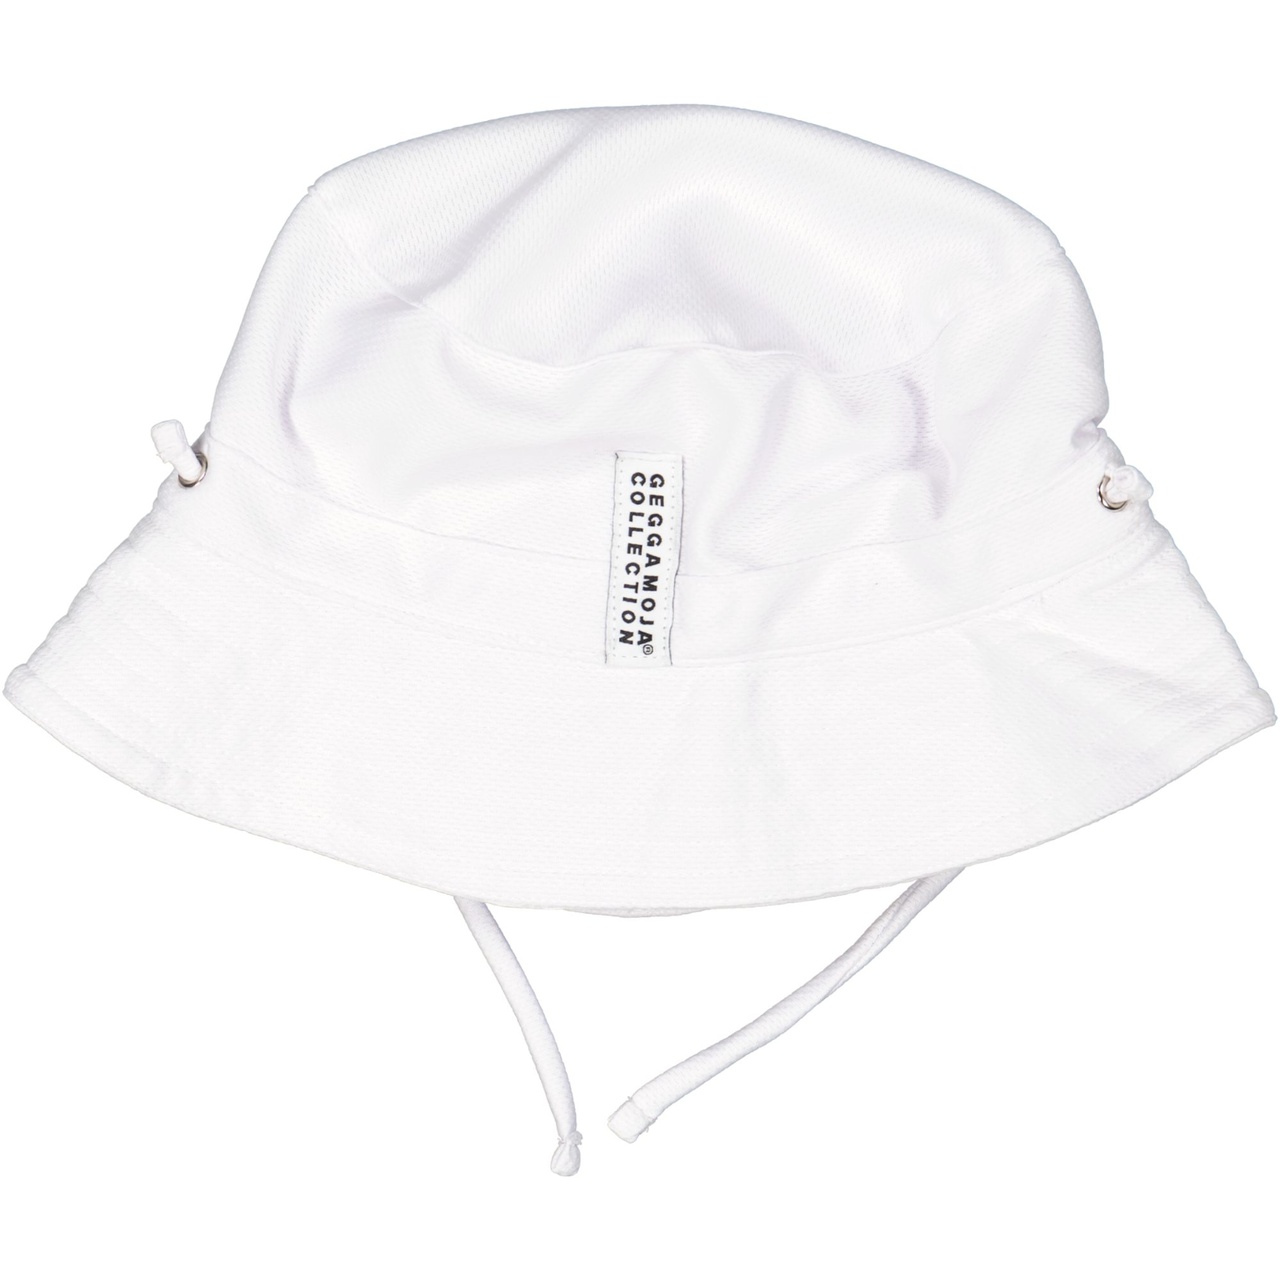 UV Sunny hat White  0-4M